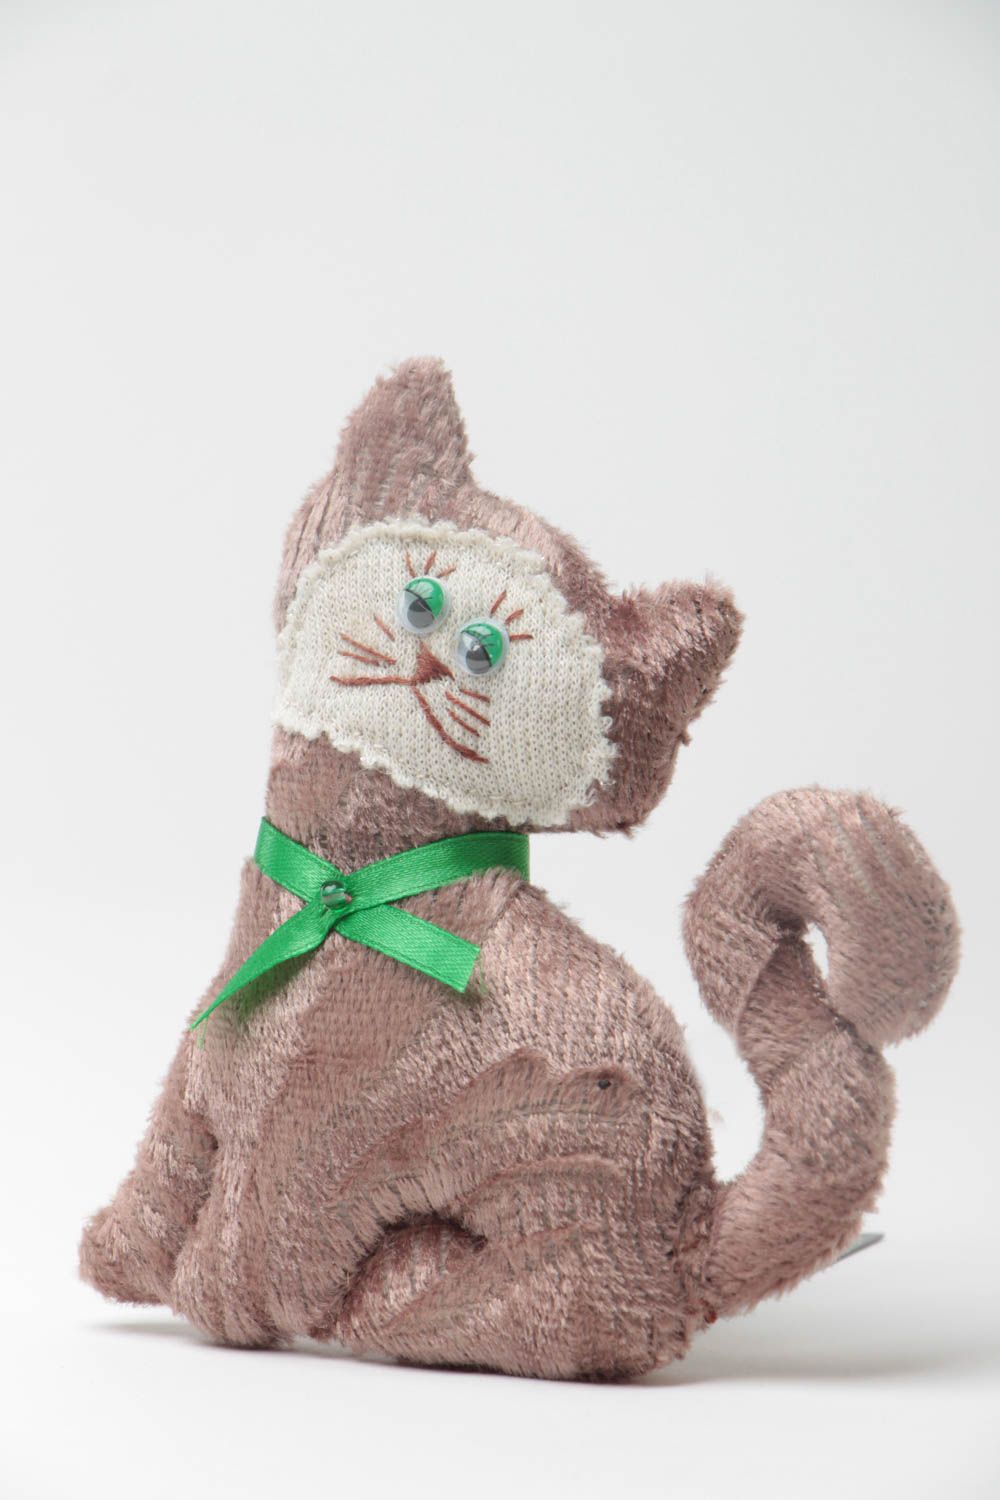 Textil Kuscheltier Kater aus Wolle weich bunt handmade Spielzeug für Kinder foto 2